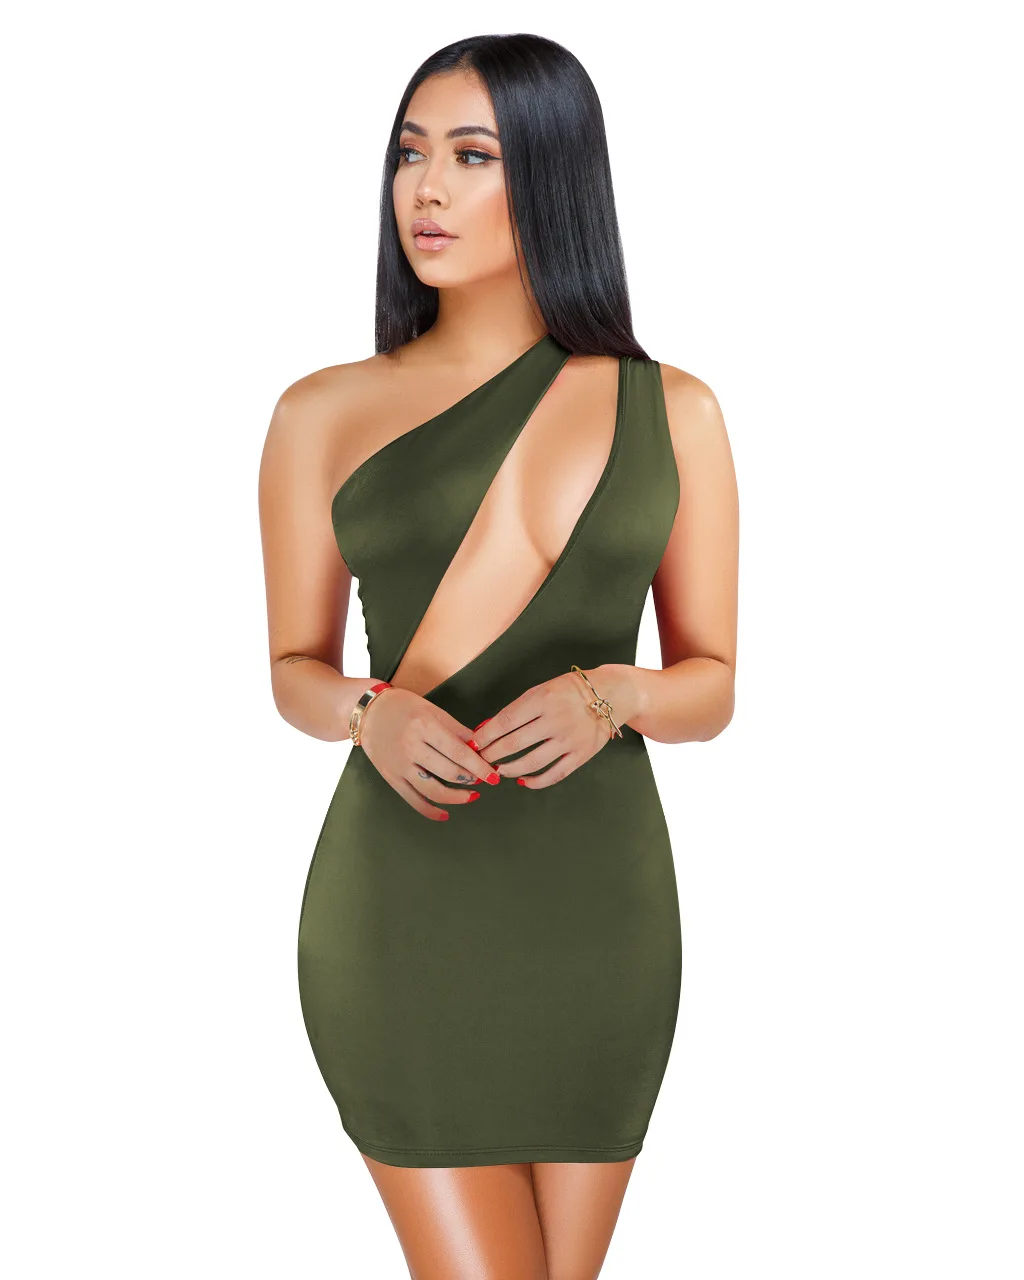 ANJAMANOR/мини-повязка на одно плечо с вырезом, облегающее платье, лето, черные сексуальные платья, женские вечерние клубные платья, D36-I62 - Цвет: Армейский зеленый